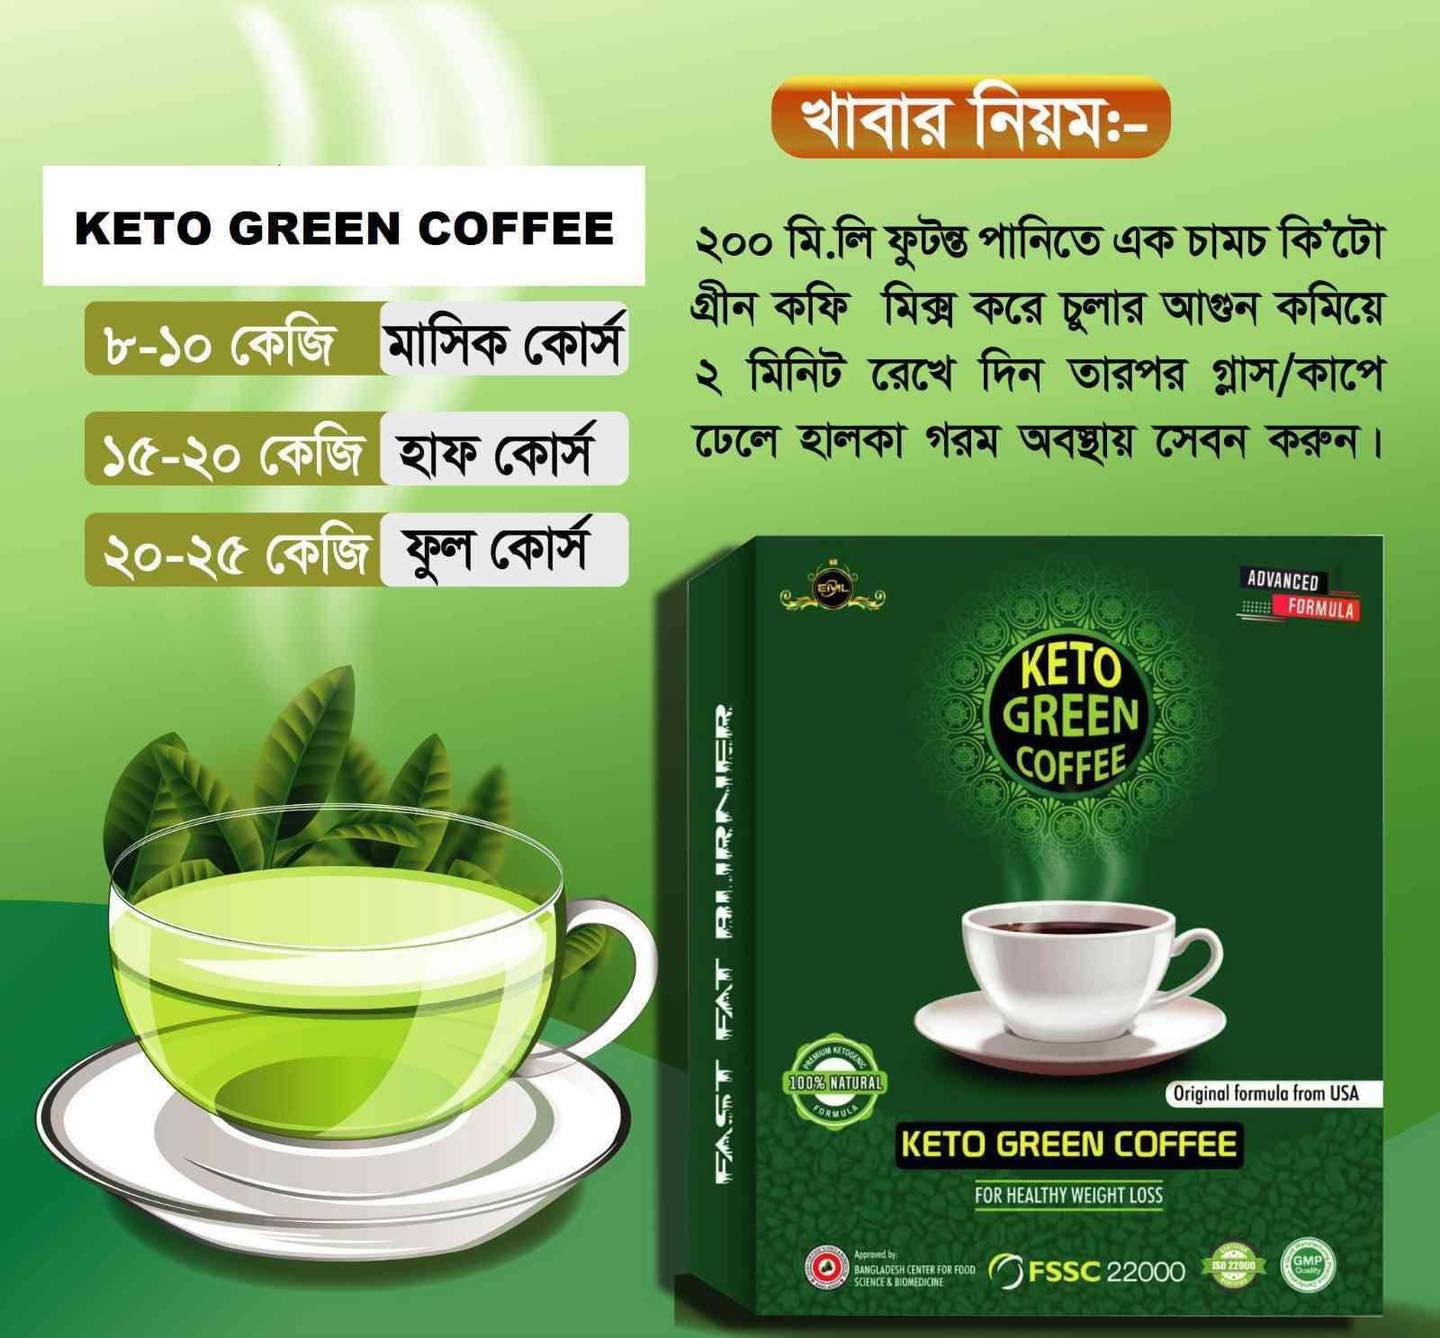 Keto Green Coffee (Buy 2 Get 1 Free)